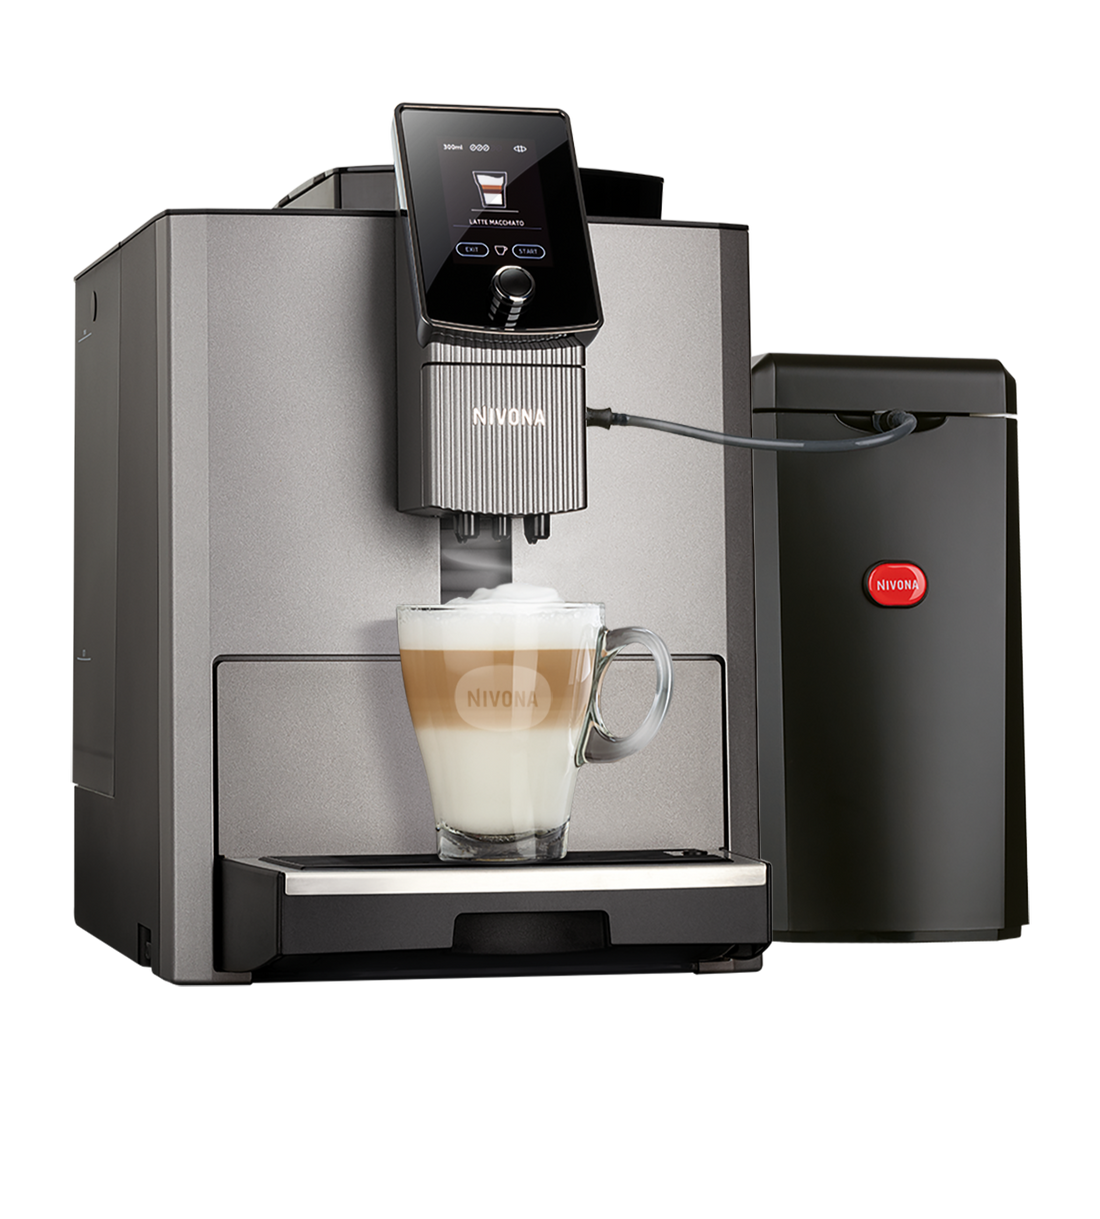 NICR 1040 Cafe Romatica fully automatic espresso machine